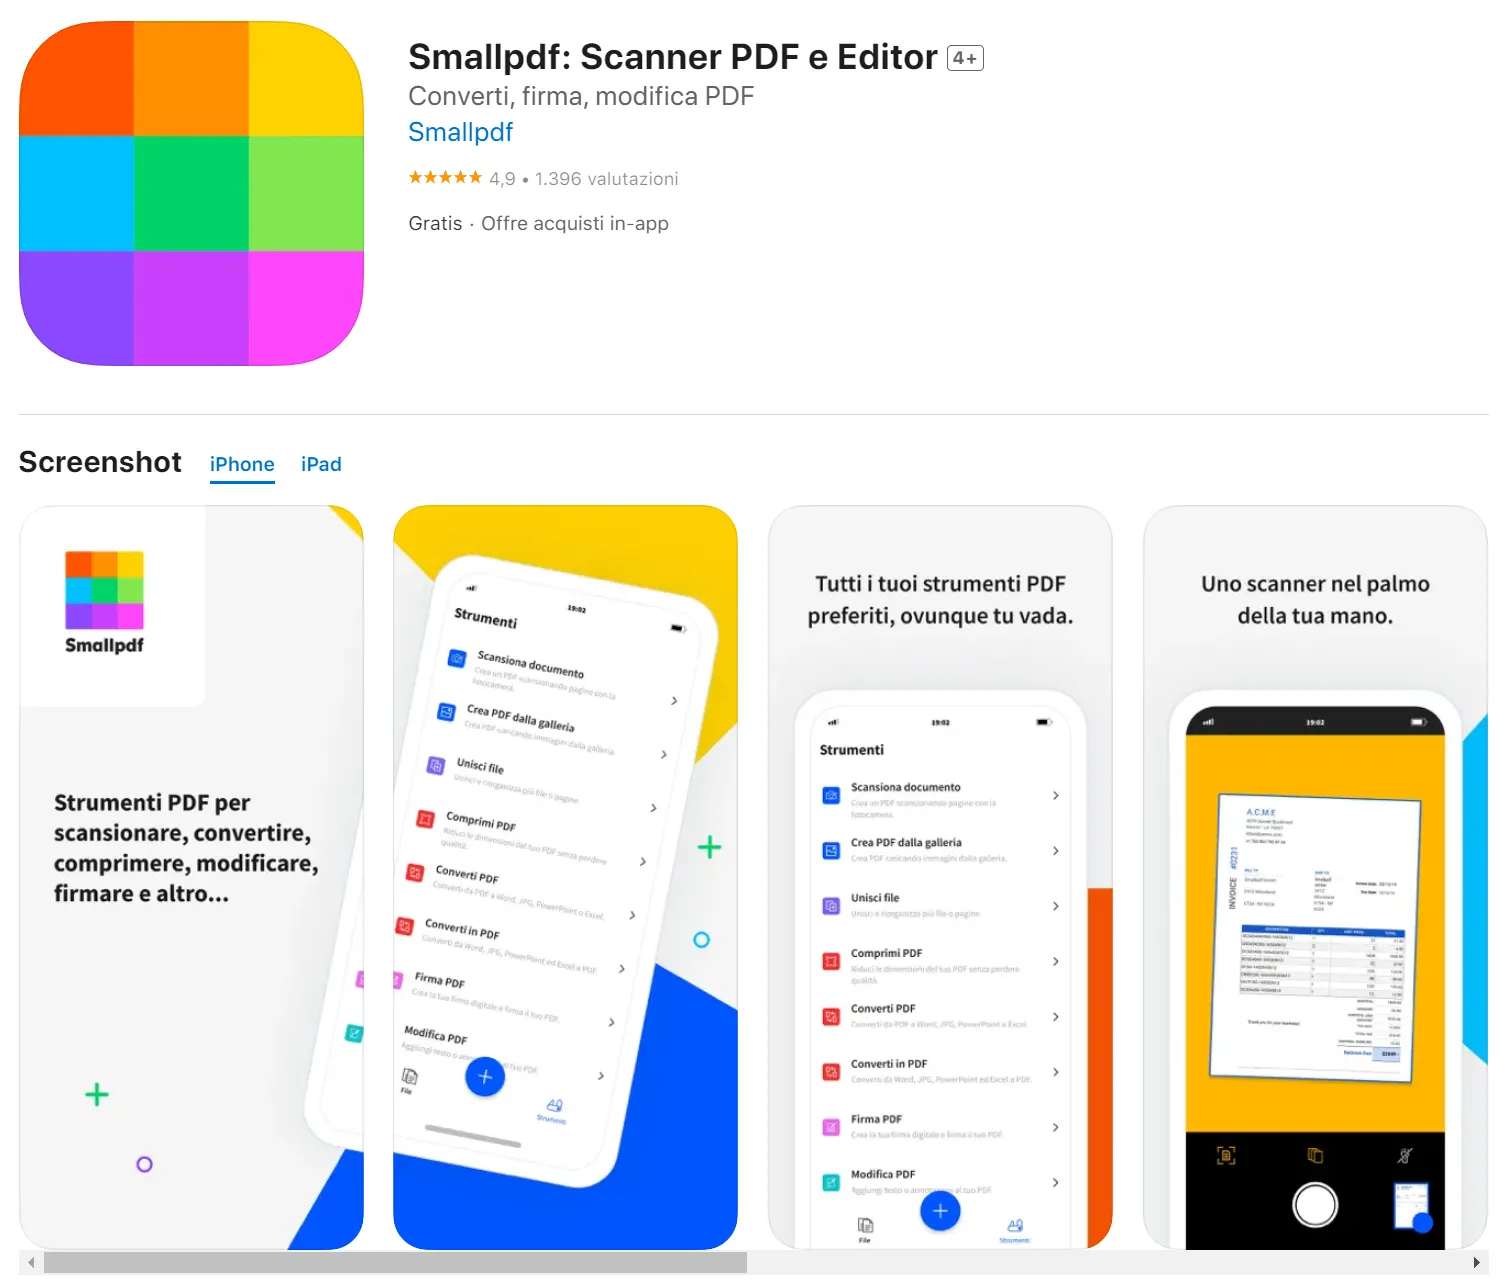 migliore convertitore PDF per iPhone Smallpdf